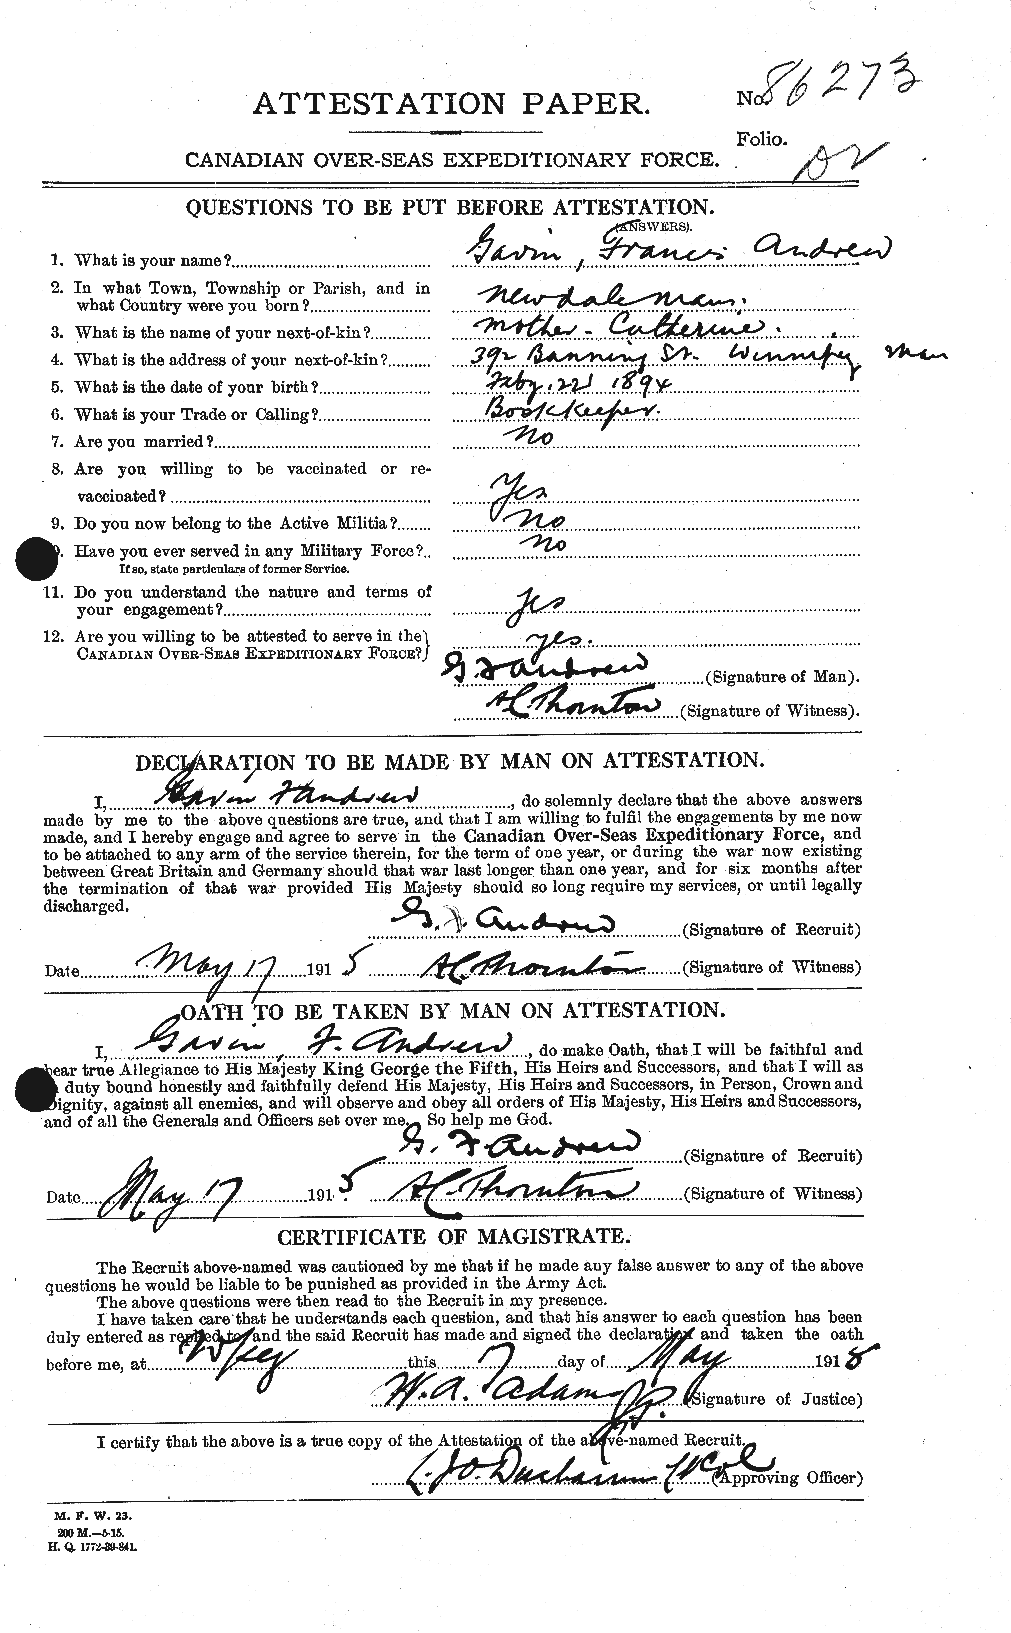 Dossiers du Personnel de la Première Guerre mondiale - CEC 210540a